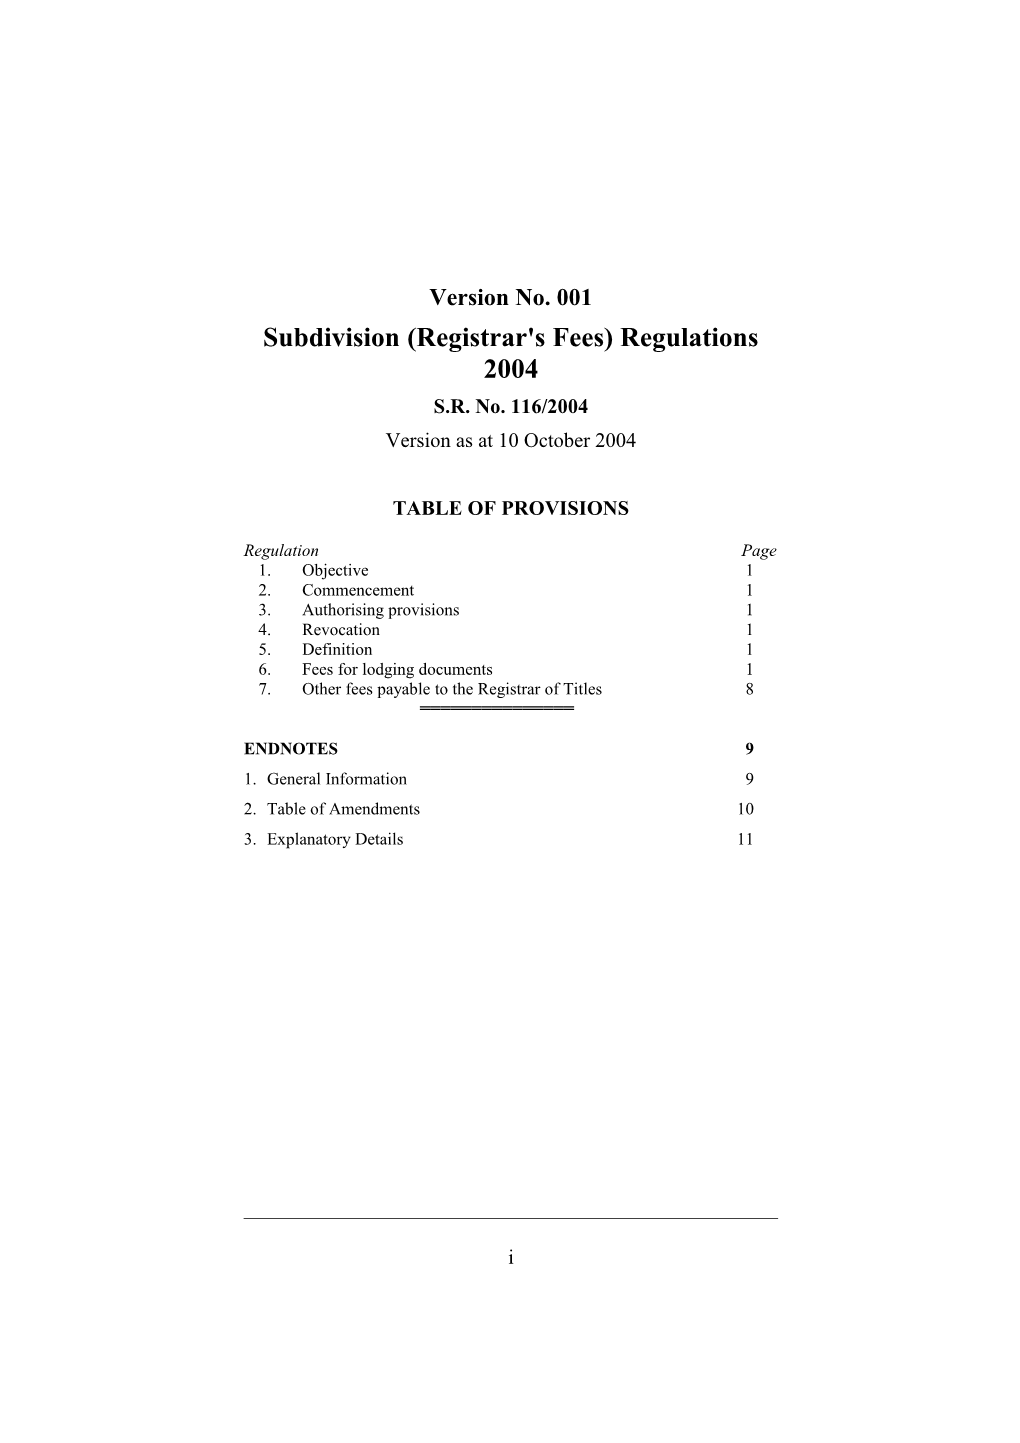 Subdivision (Registrar's Fees) Regulations 2004